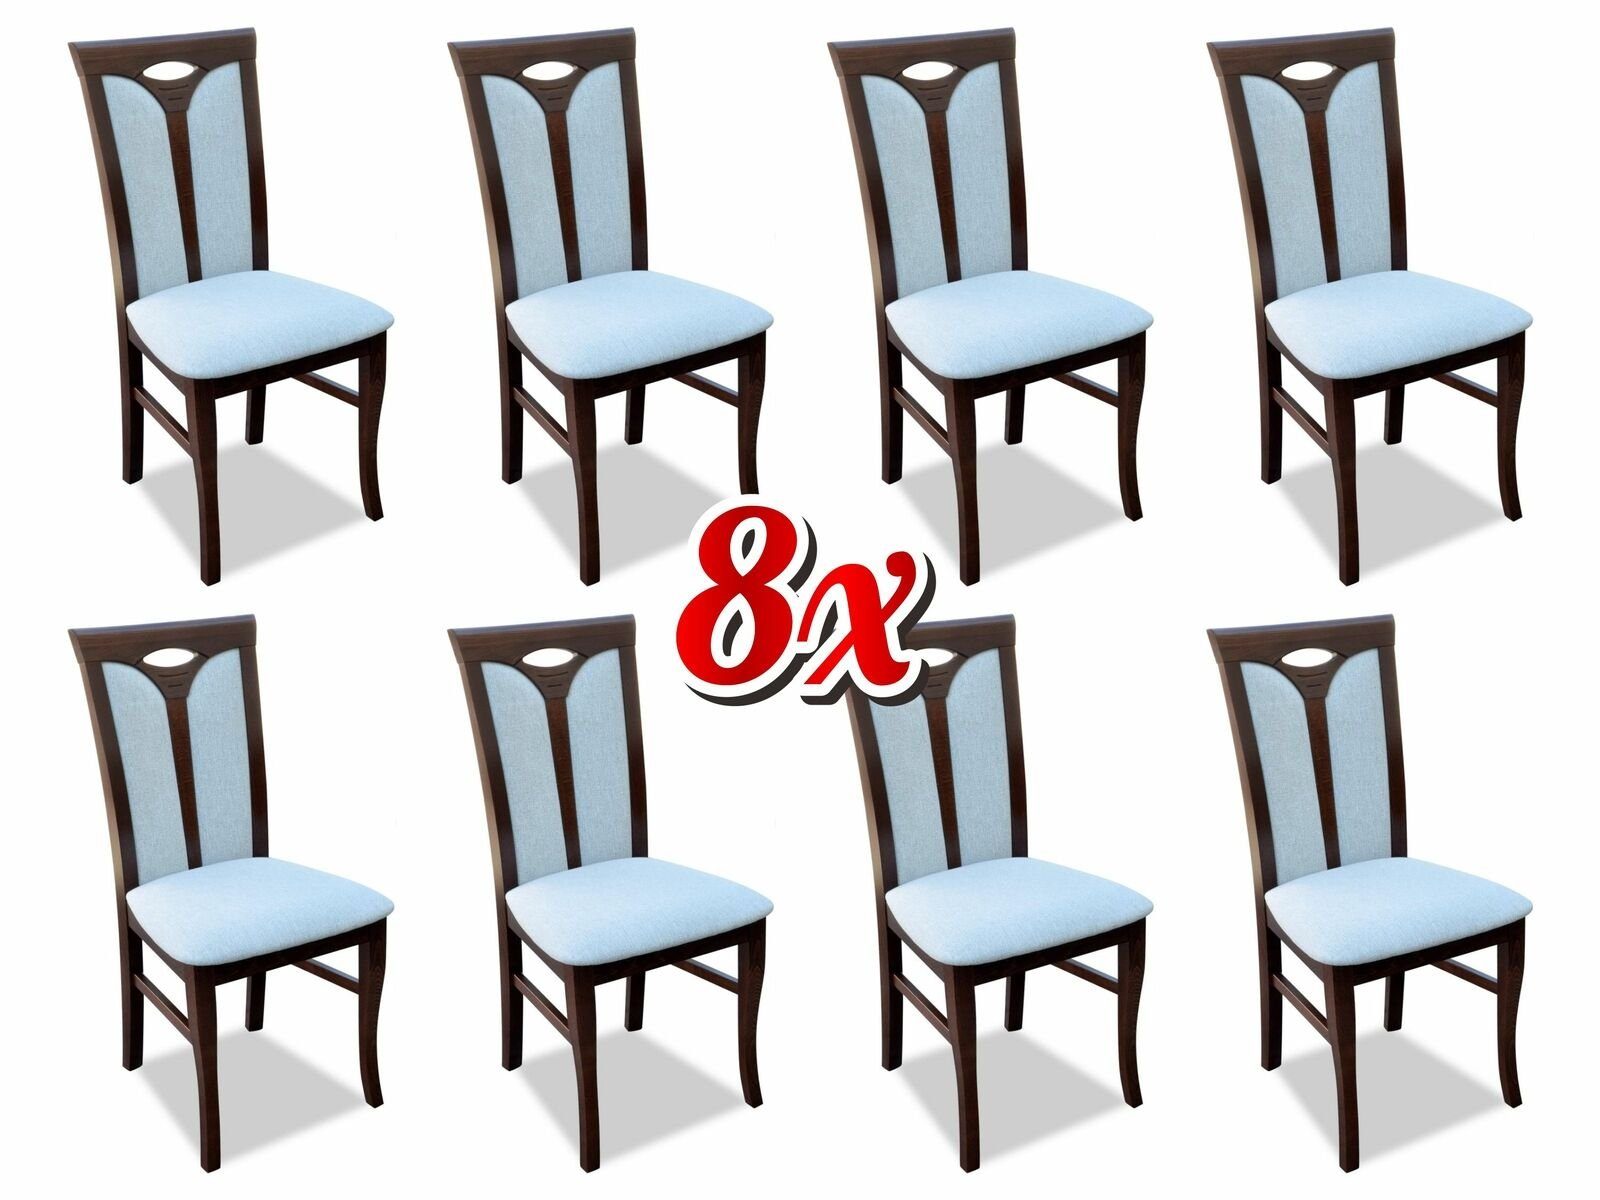 JVmoebel Stuhl, Lehnstuhl Garnitur Stühle Gastro Esszimmer Textil Stoff Set 8x Design Stuhl Holz | Stühle